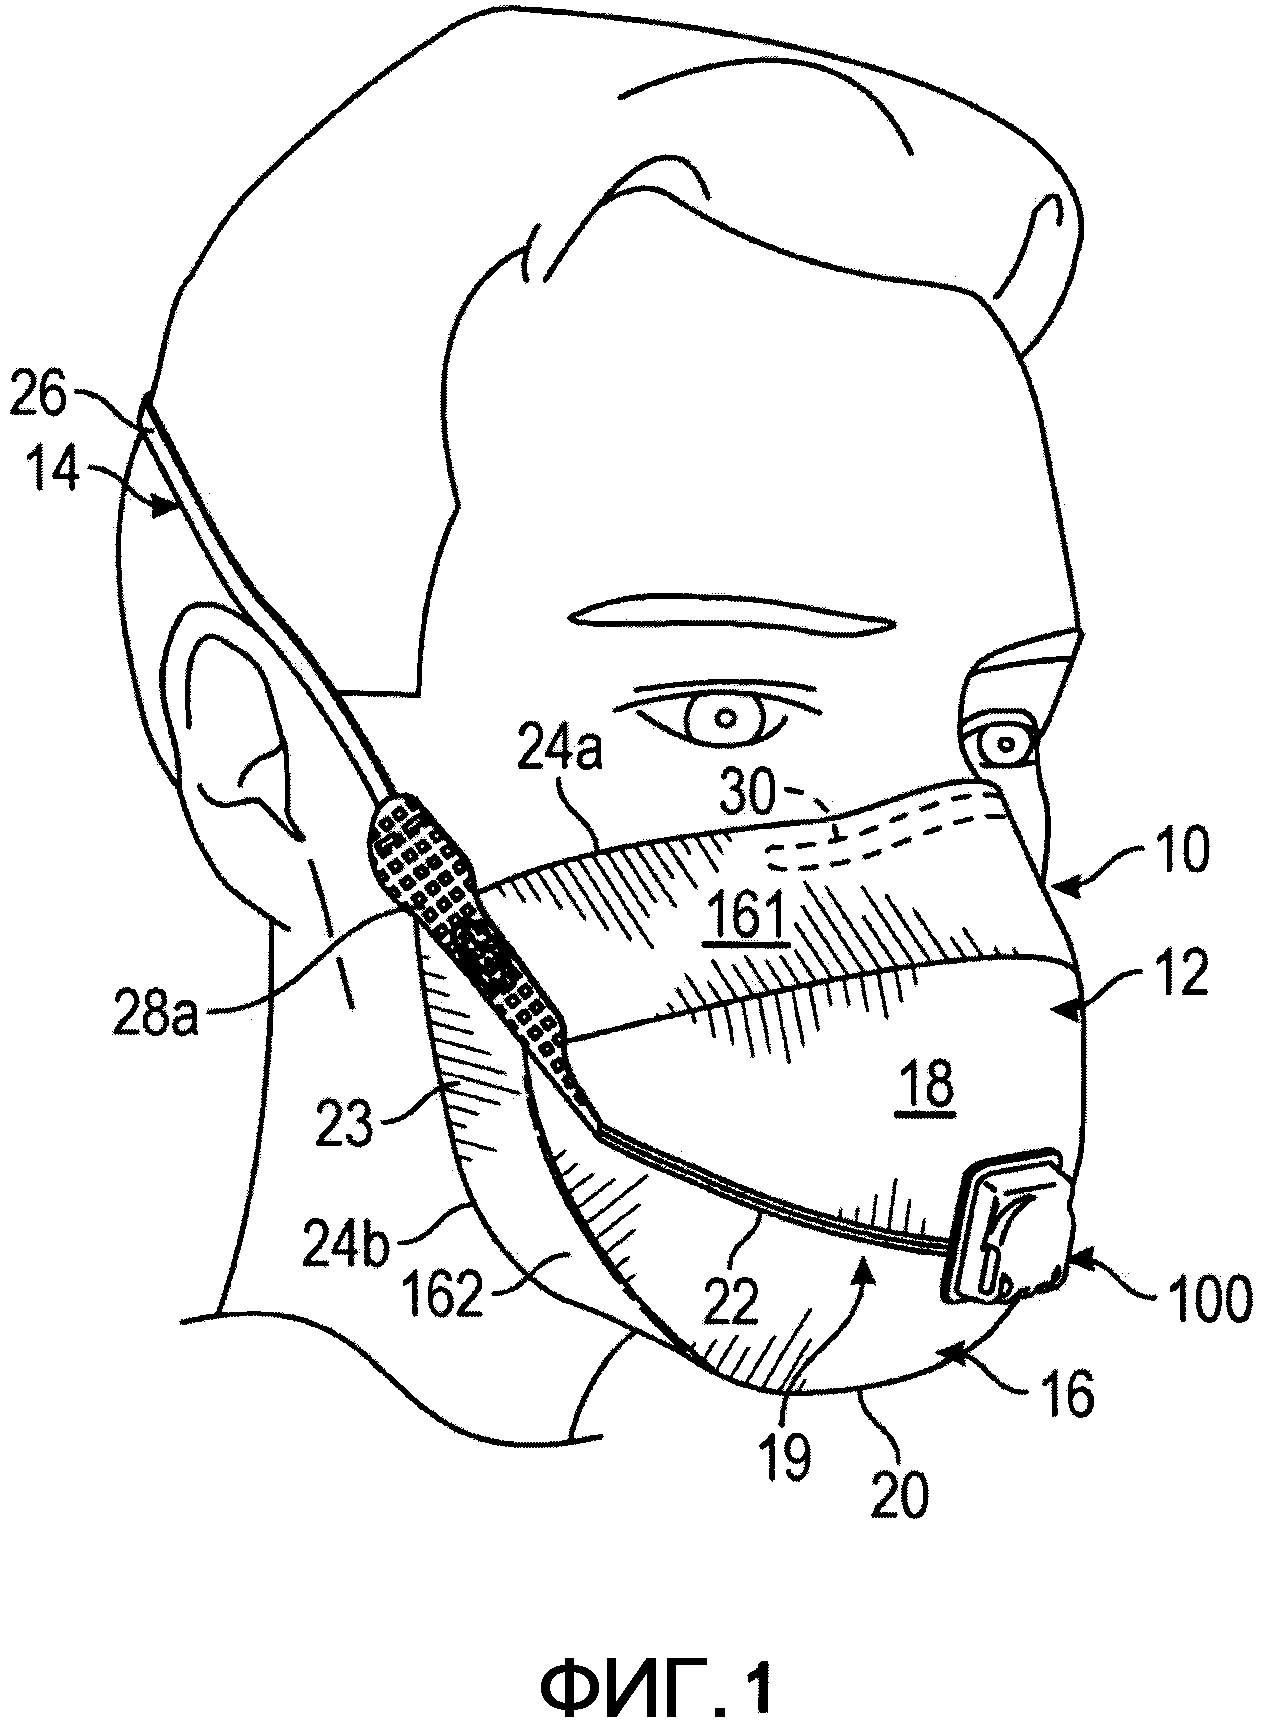 Складная респираторная лицевая маска с клапаном выдоха